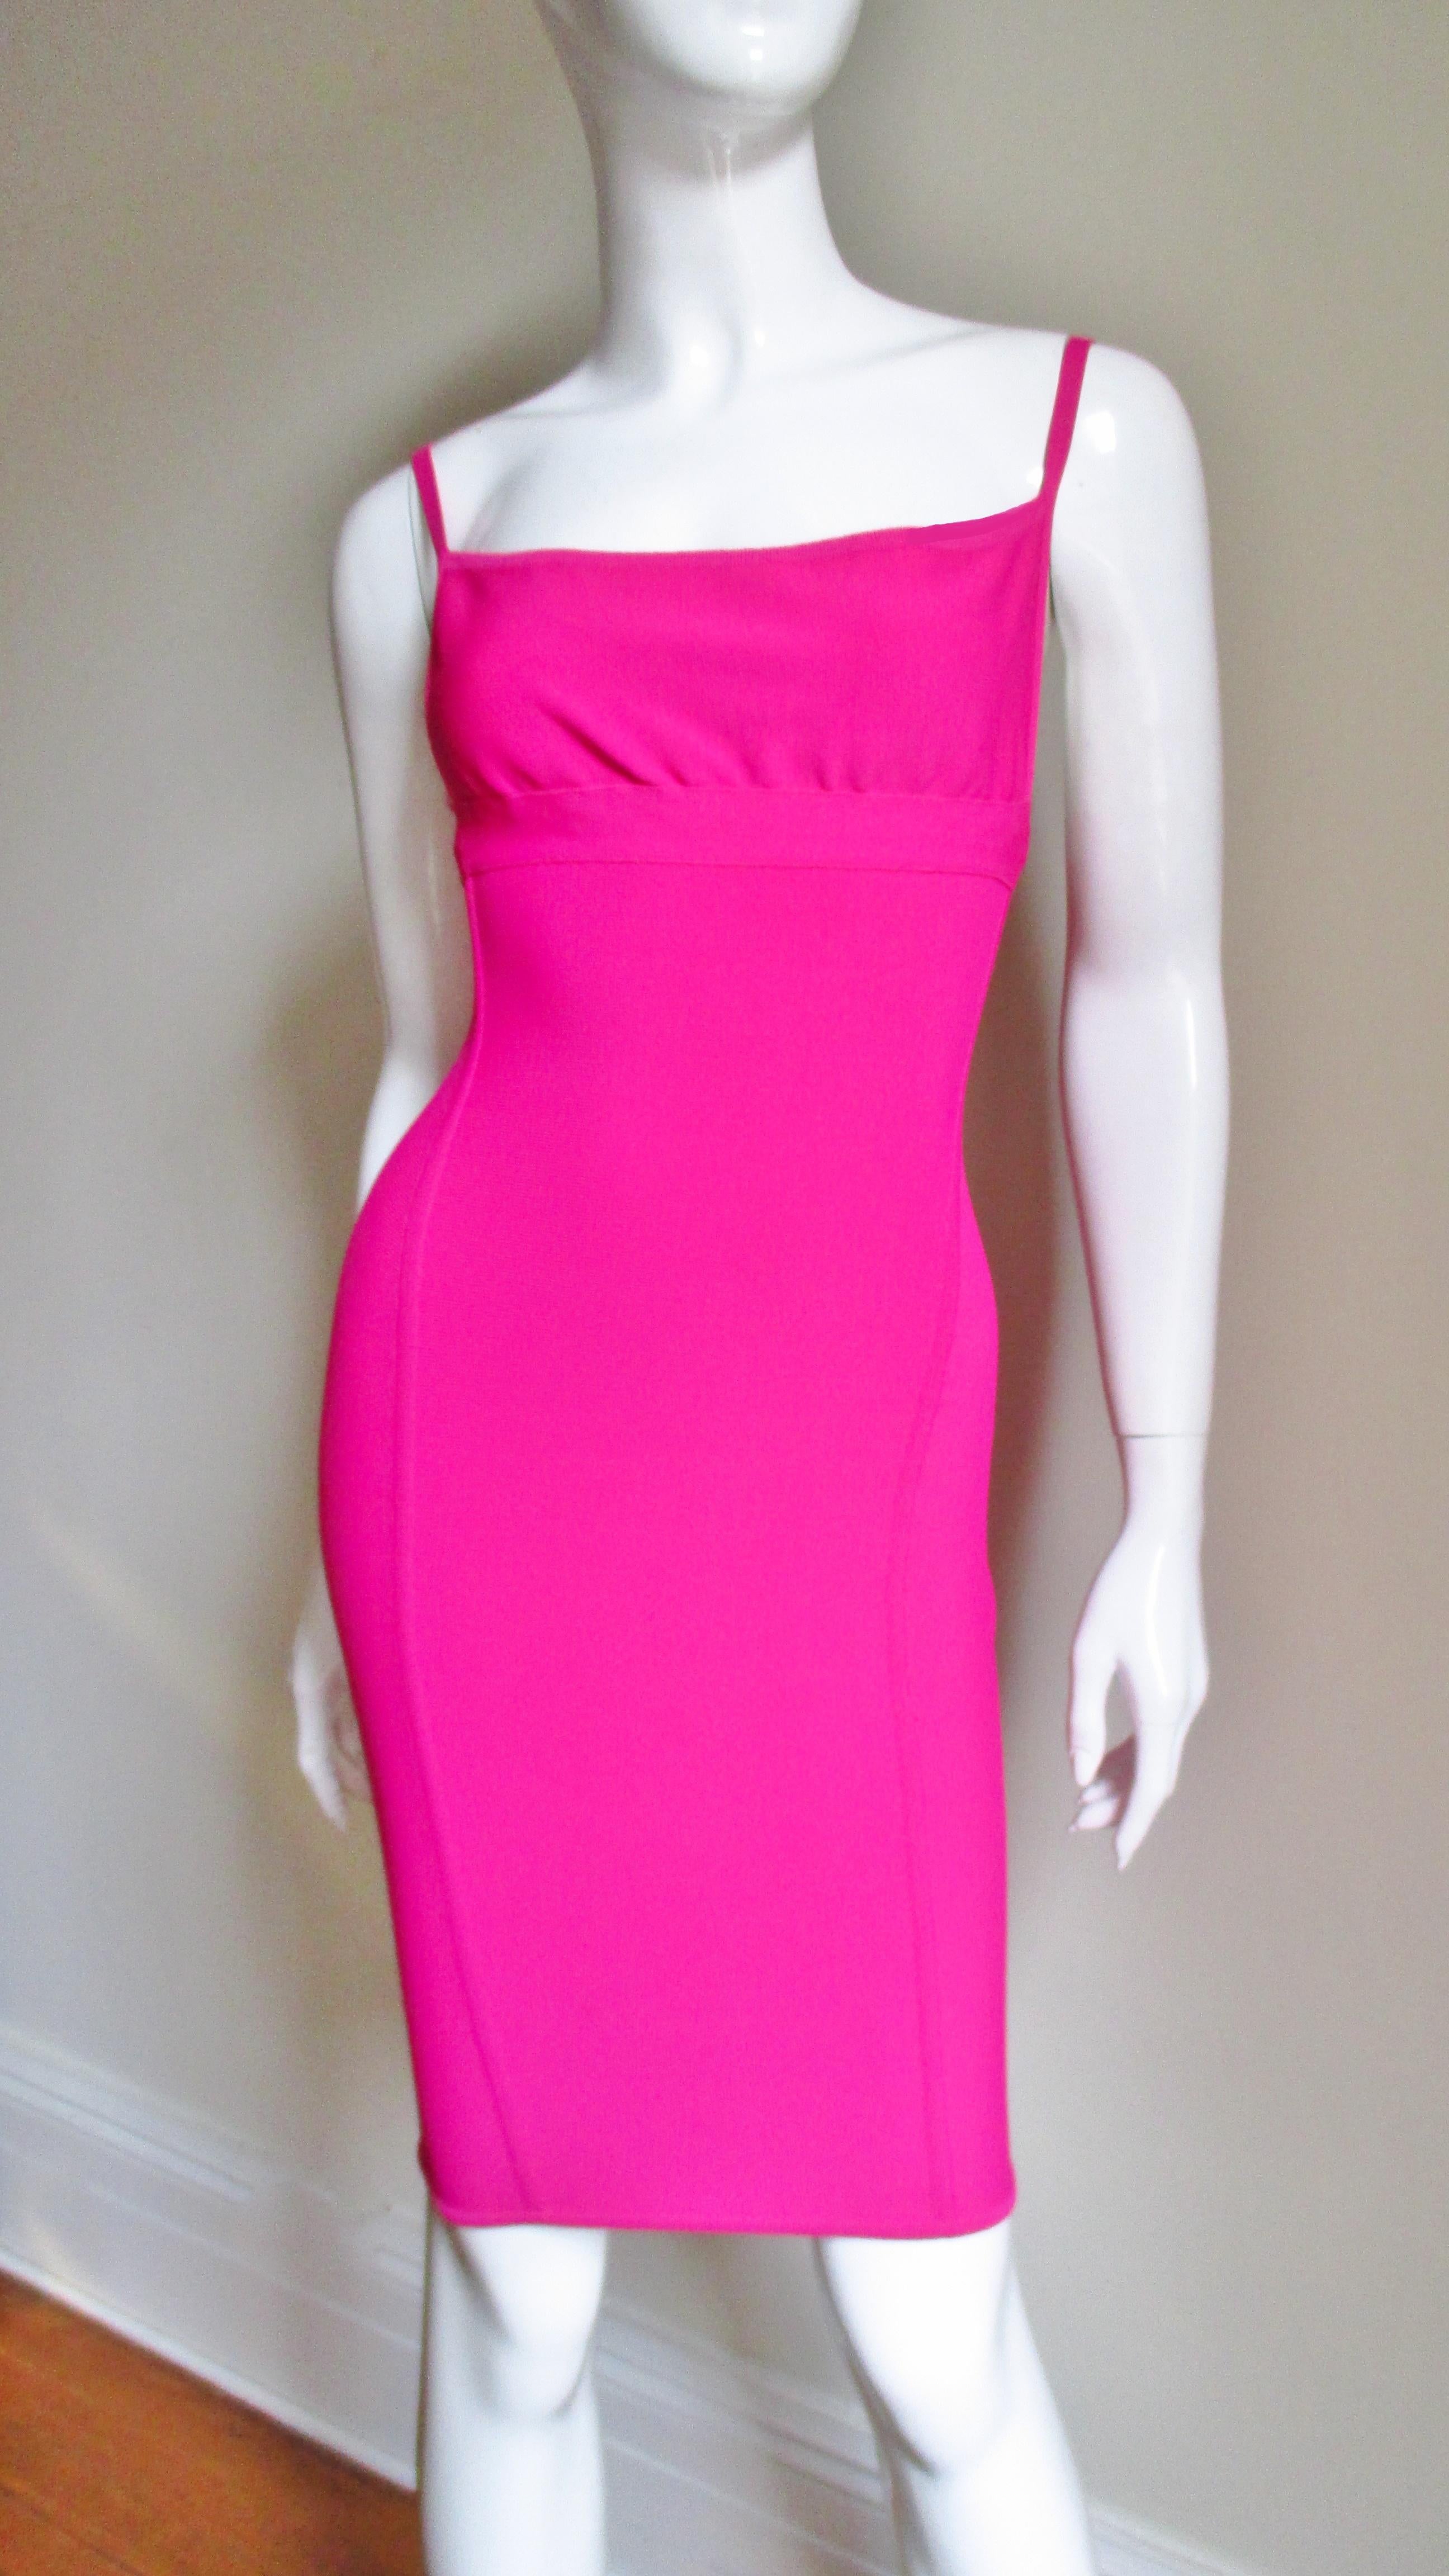 Ein wunderschönes, körperbetontes, rosafarbenes Kleid von Meisterdesigner Herve Leger aus seinem charakteristischen Stretch-Bandage-Stoff.  Das Kleid hat Spaghetti-Träger und die körperbetonte Passform, die er berühmt gemacht hat. Es ist ungefüttert